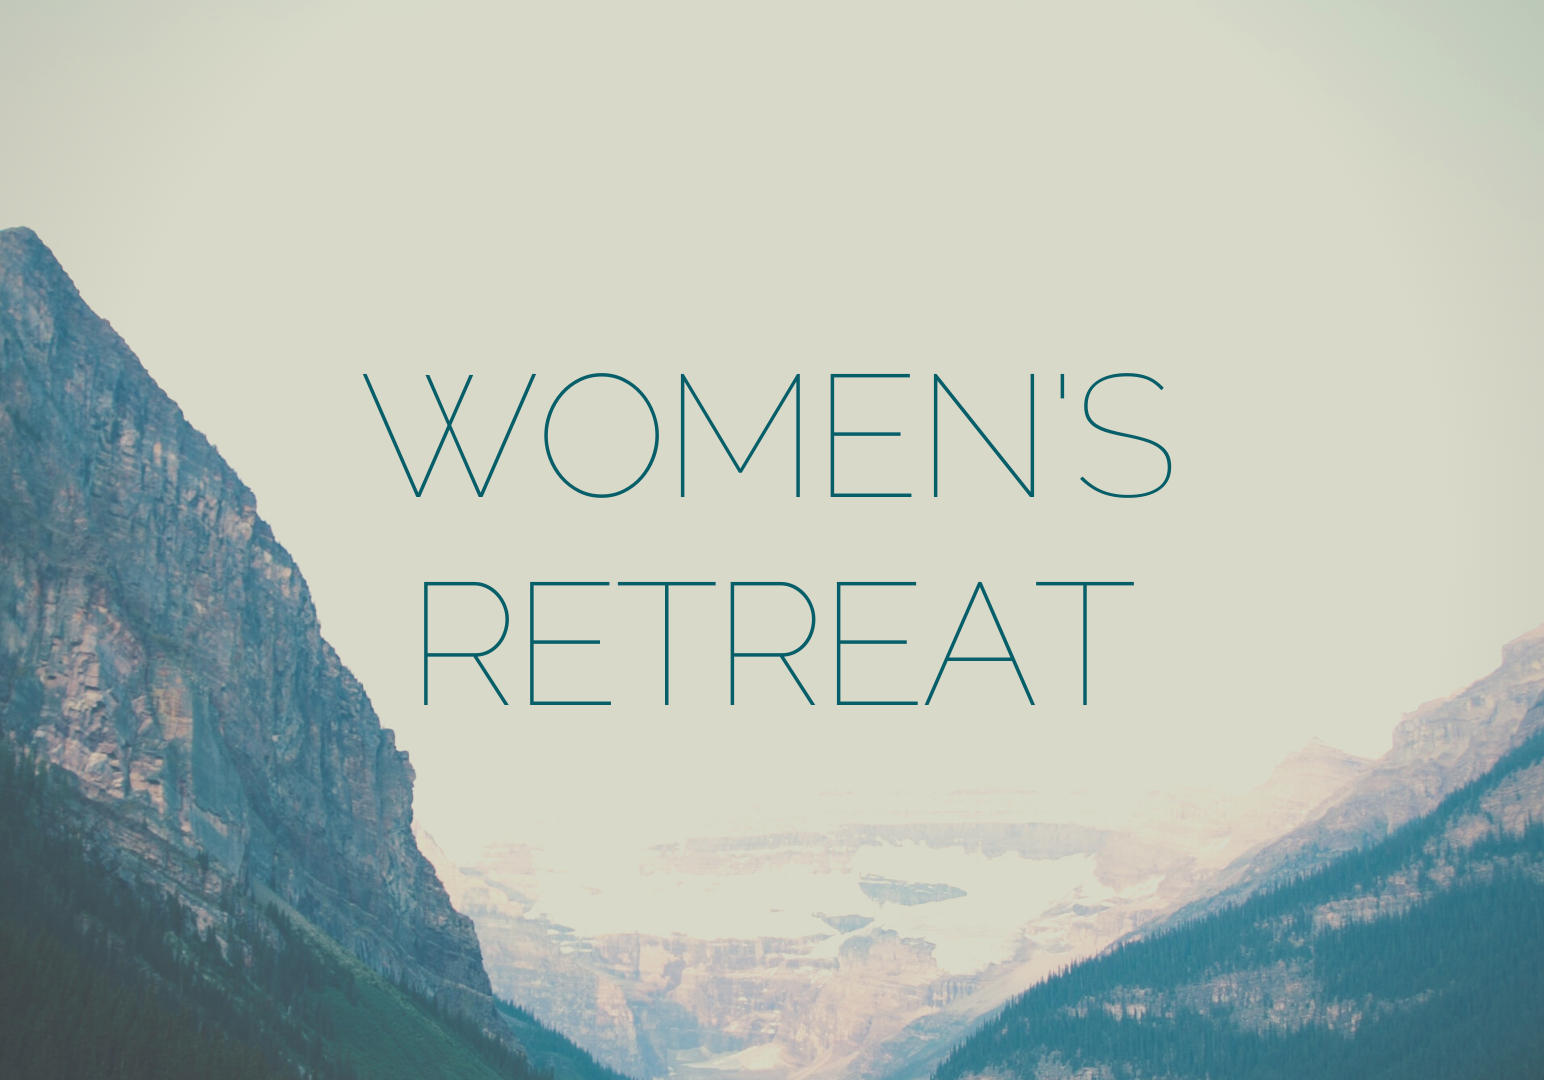 Women's retreat